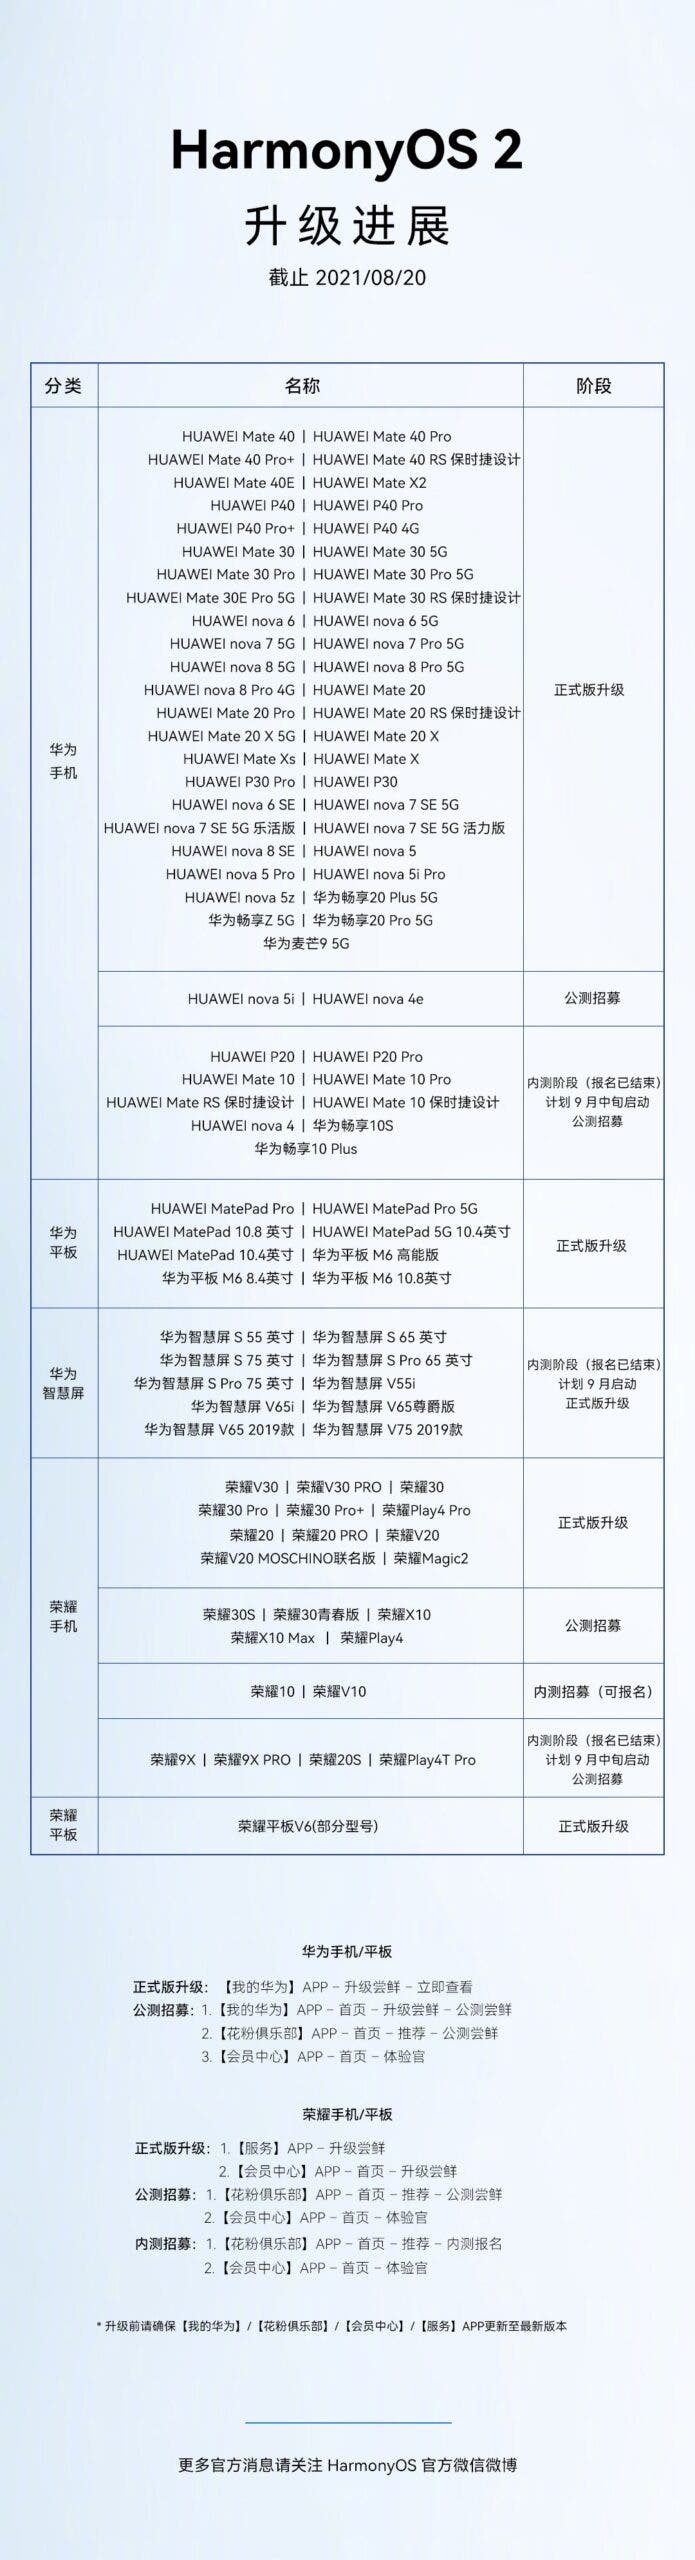 Pengumuman tentang daftar ponsel yang memiliki pembaruan HarmonyOS 2 dari Huawei